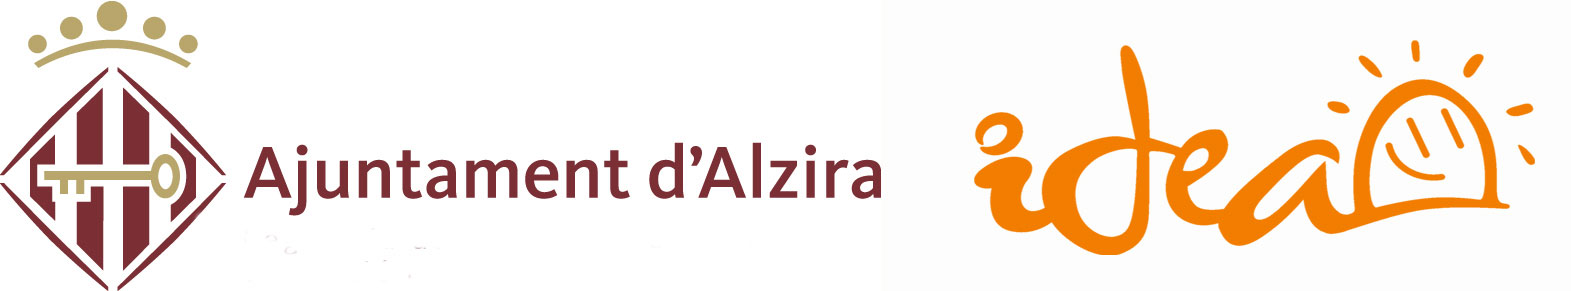 AJUNTAMENT D'ALZIRA